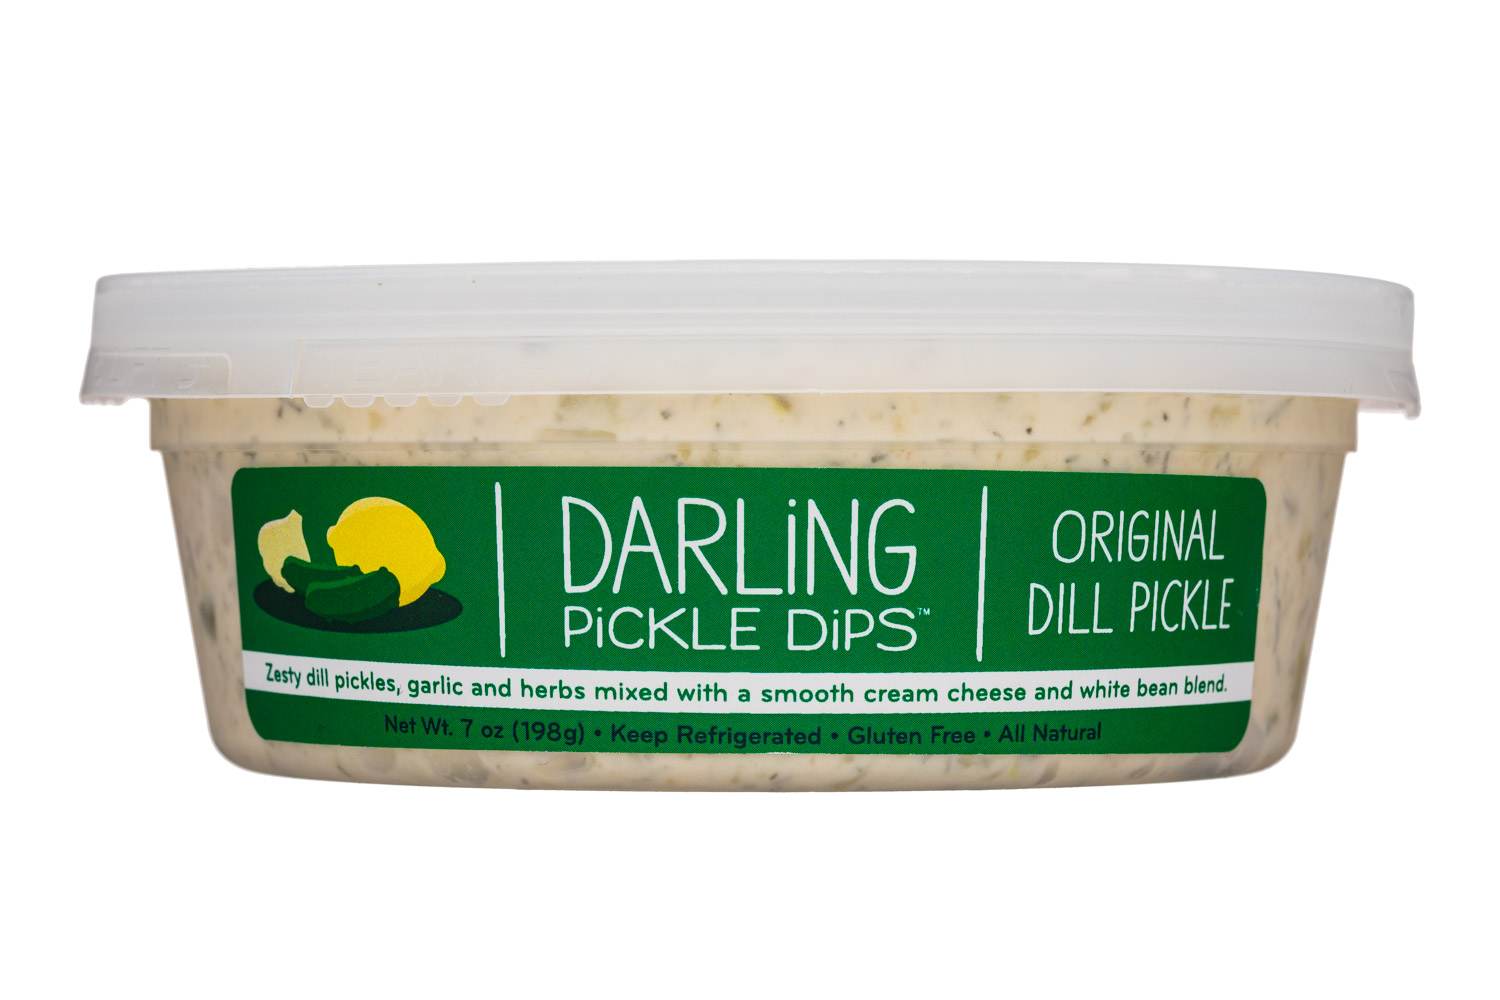 Original Dill Pickle 